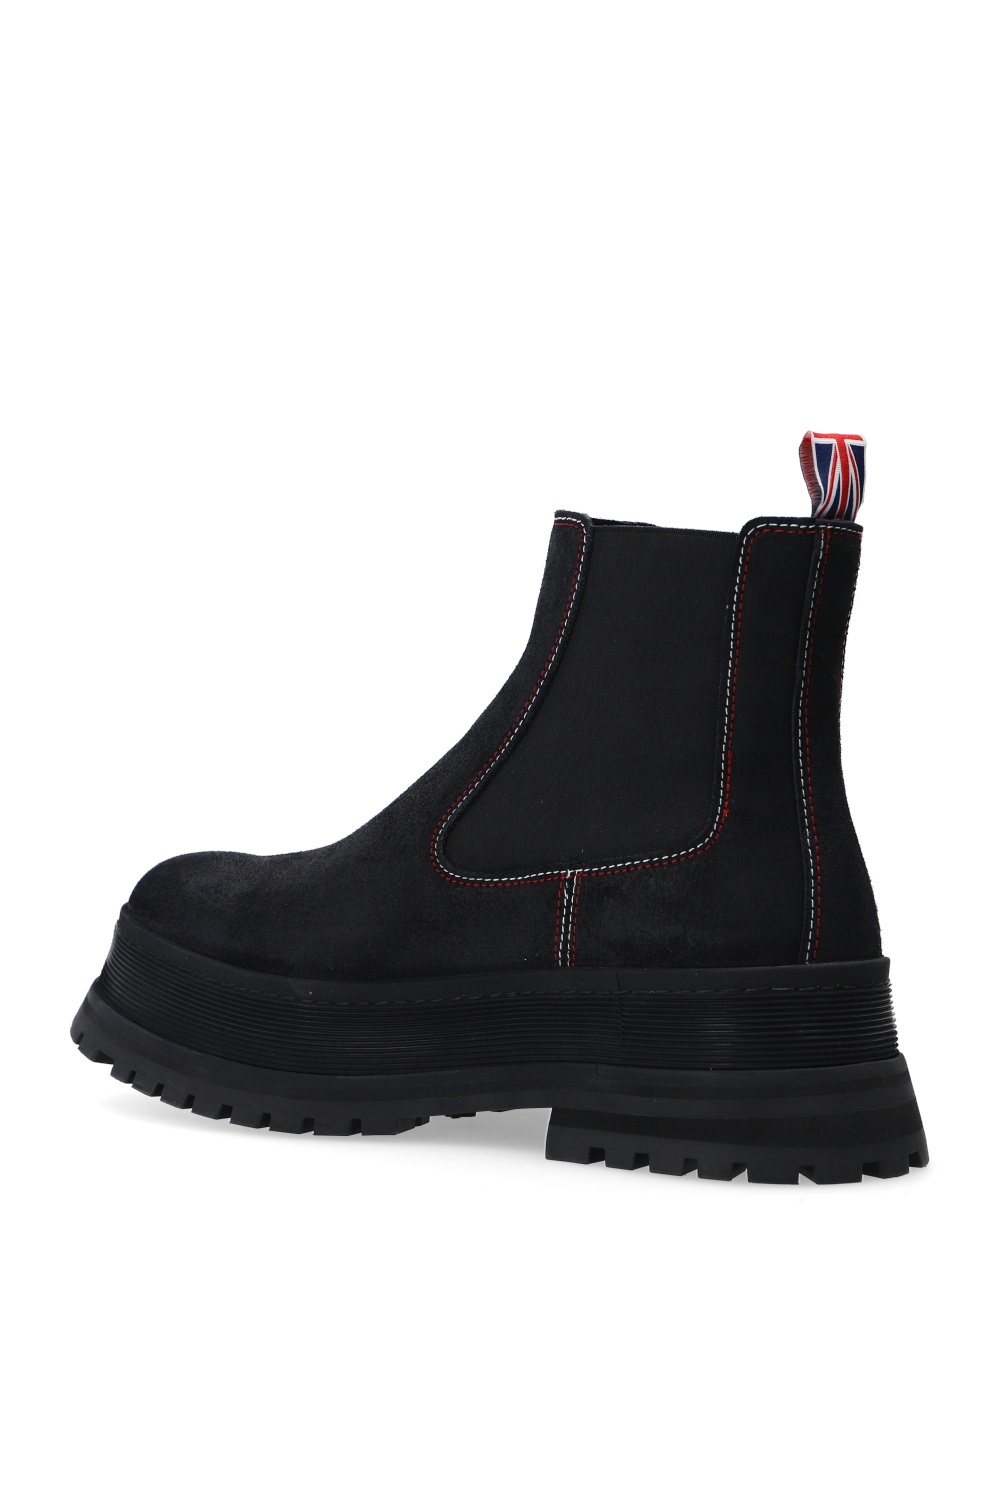 Burberry 'Jeffrey' ankle boots | Men's Shoes | IetpShops